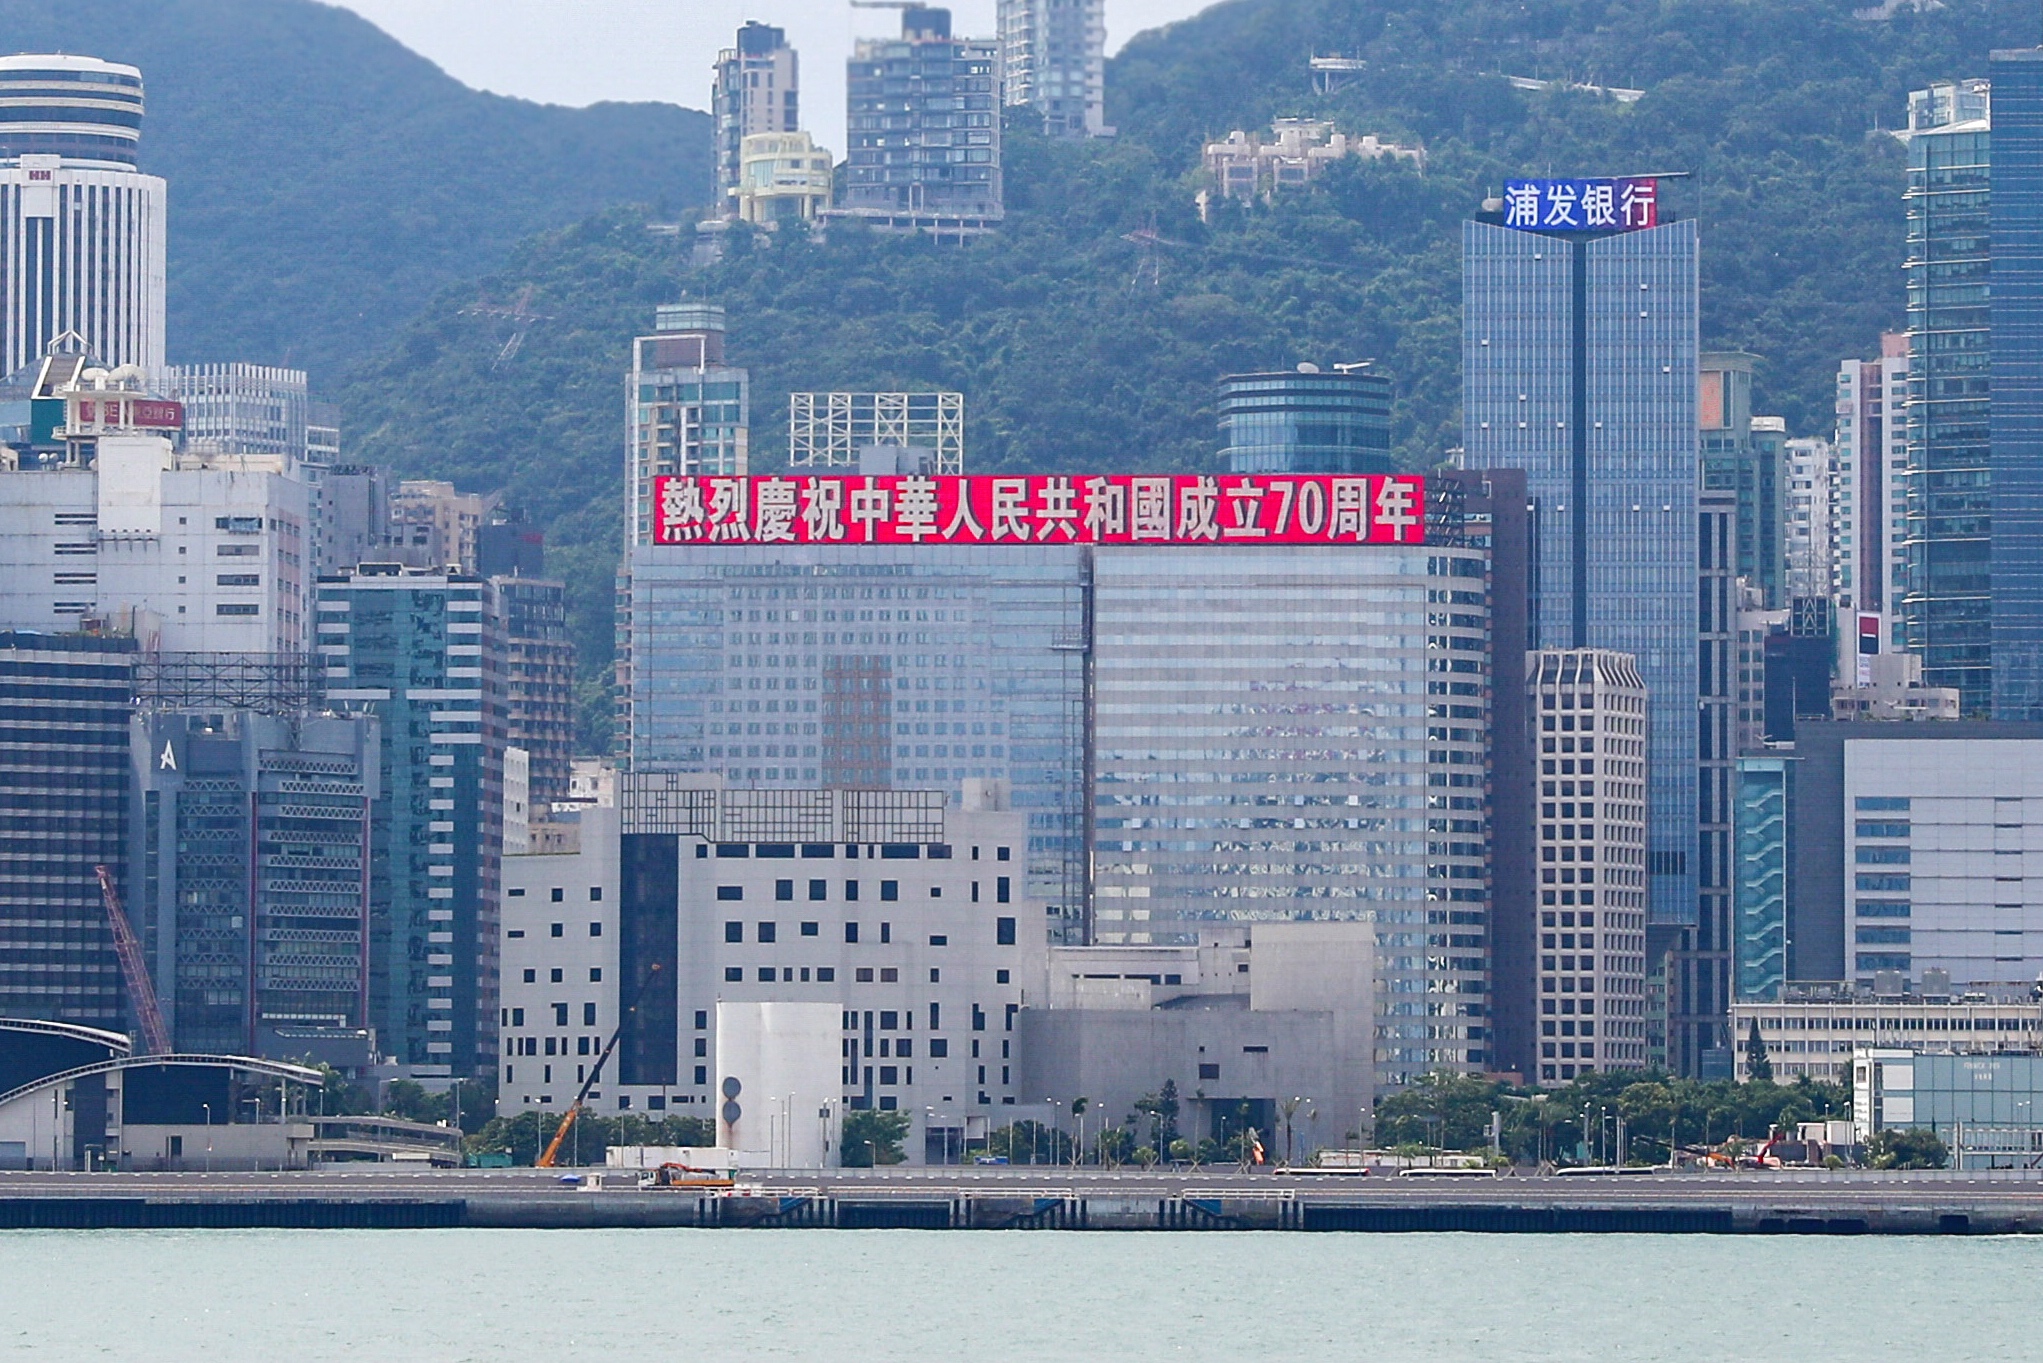 恒大香港总部大楼打出国庆庆祝标语